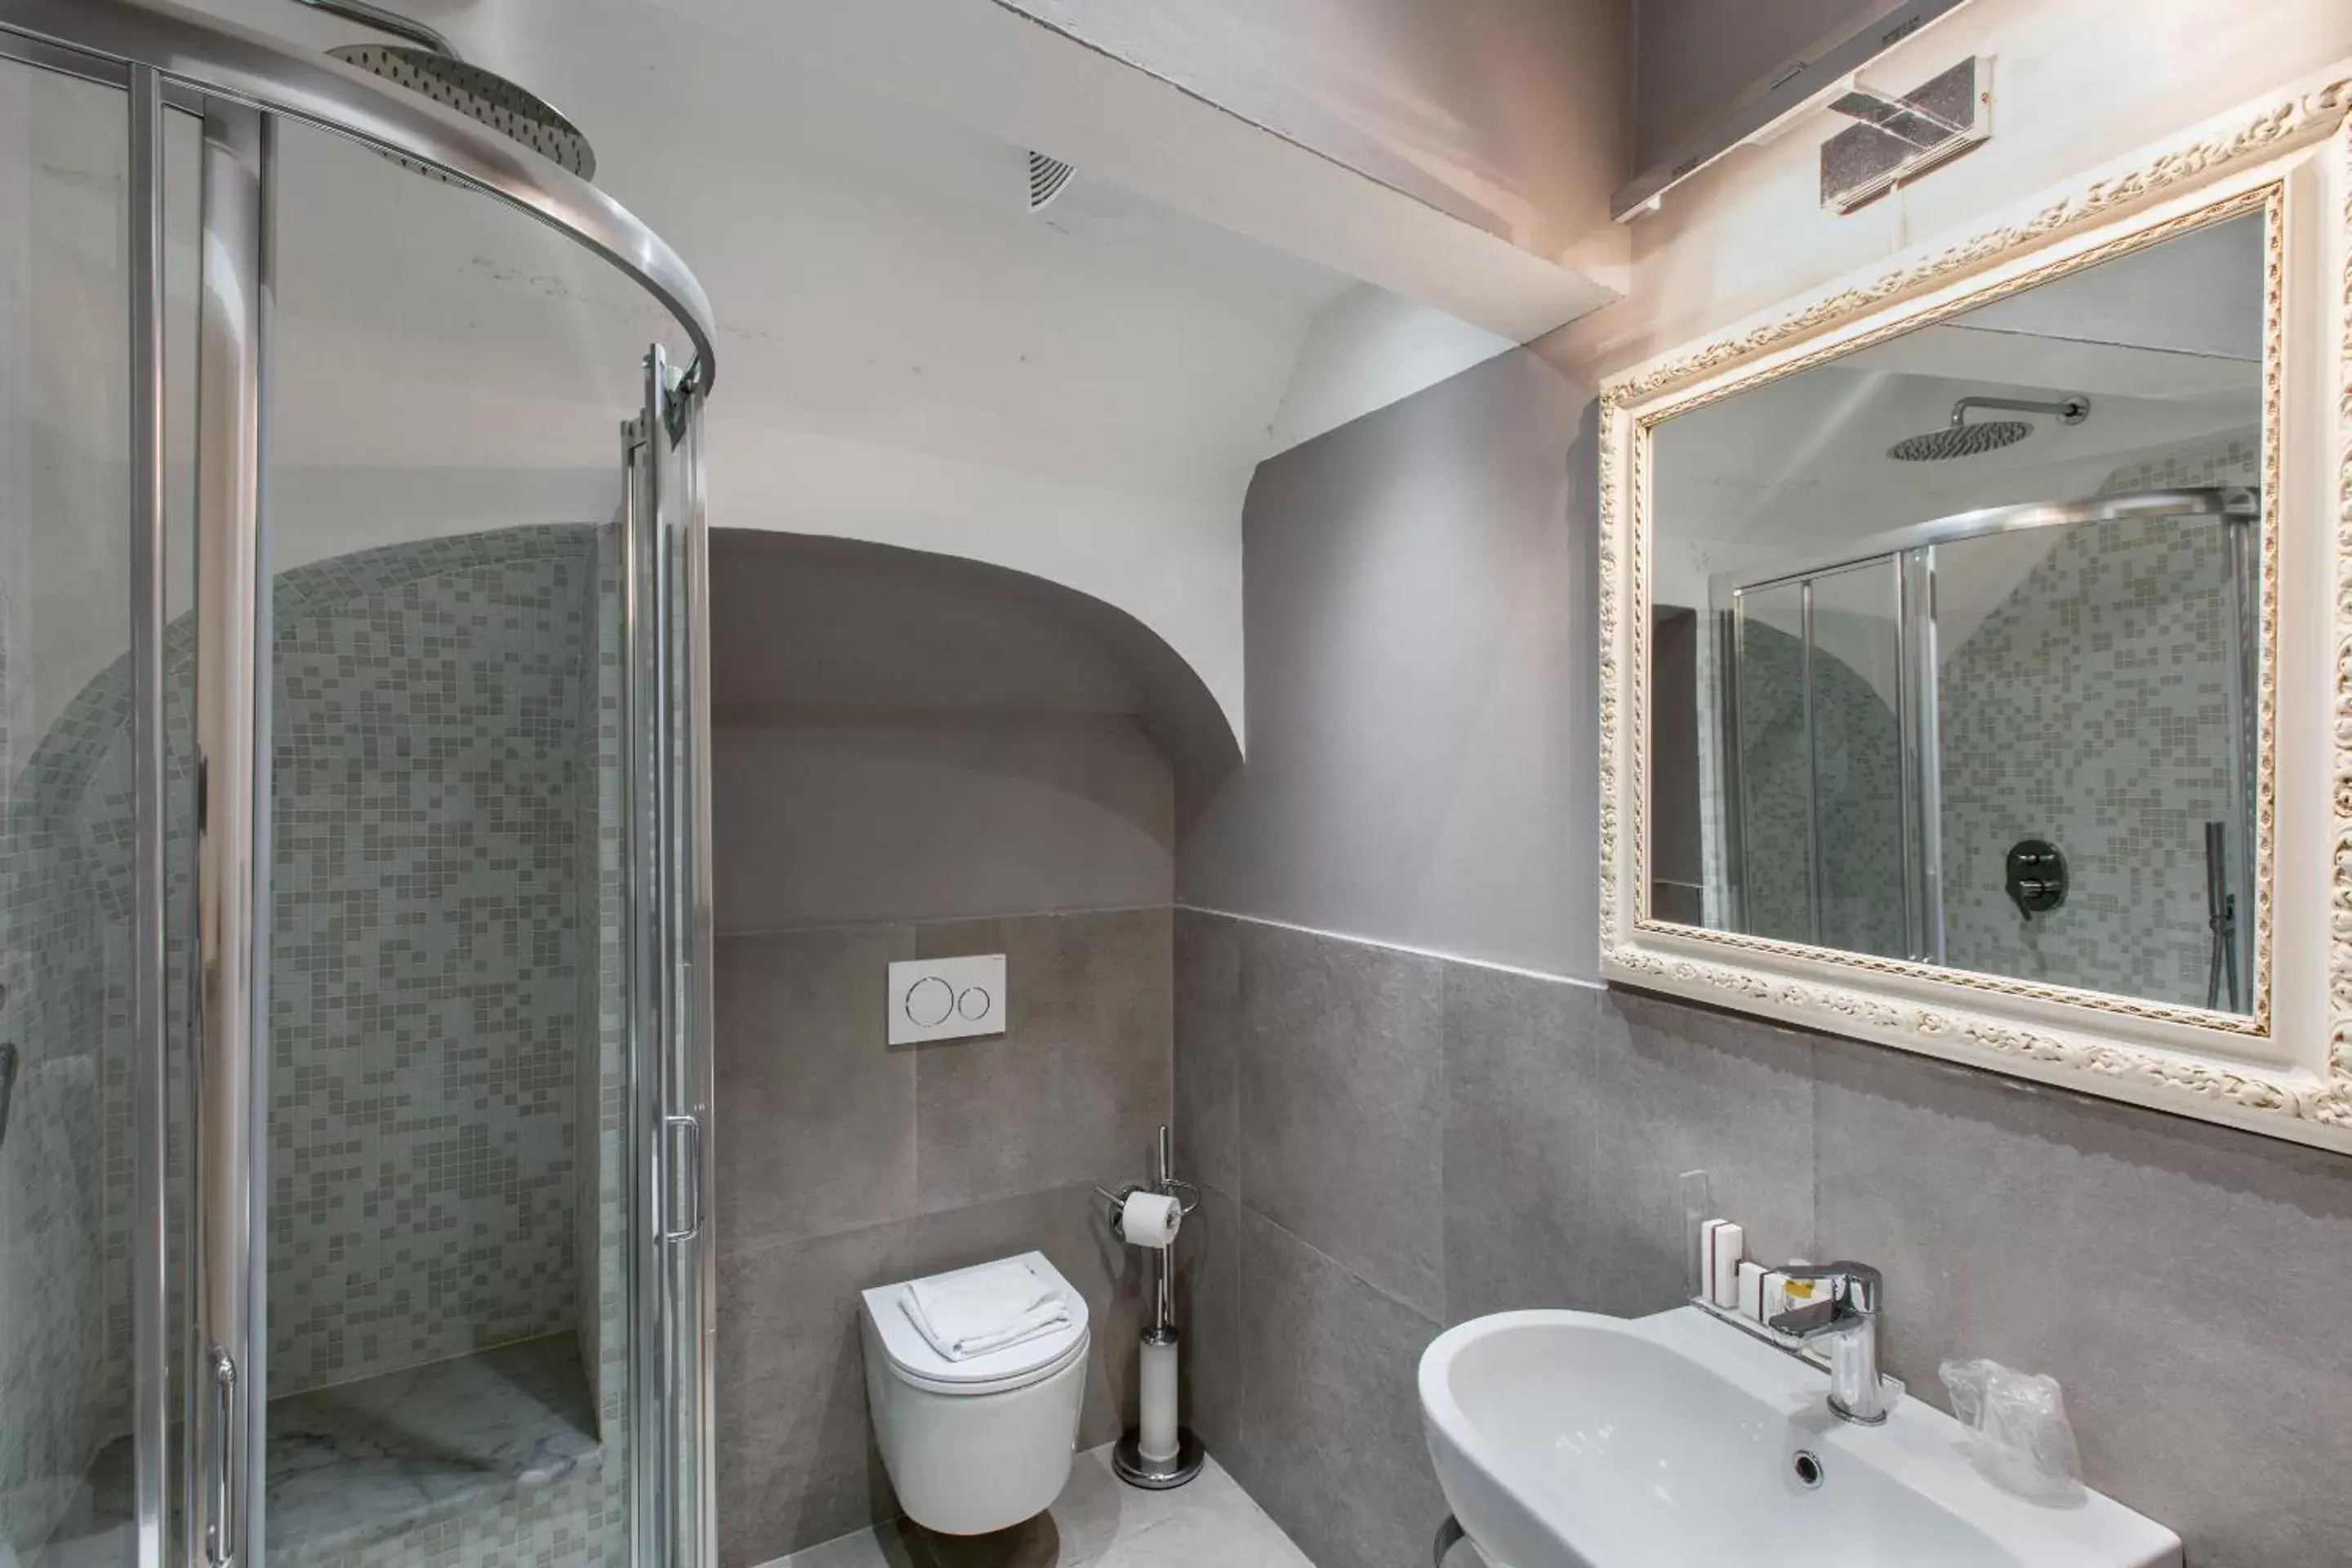 Bathroom in Badia Fiorentina